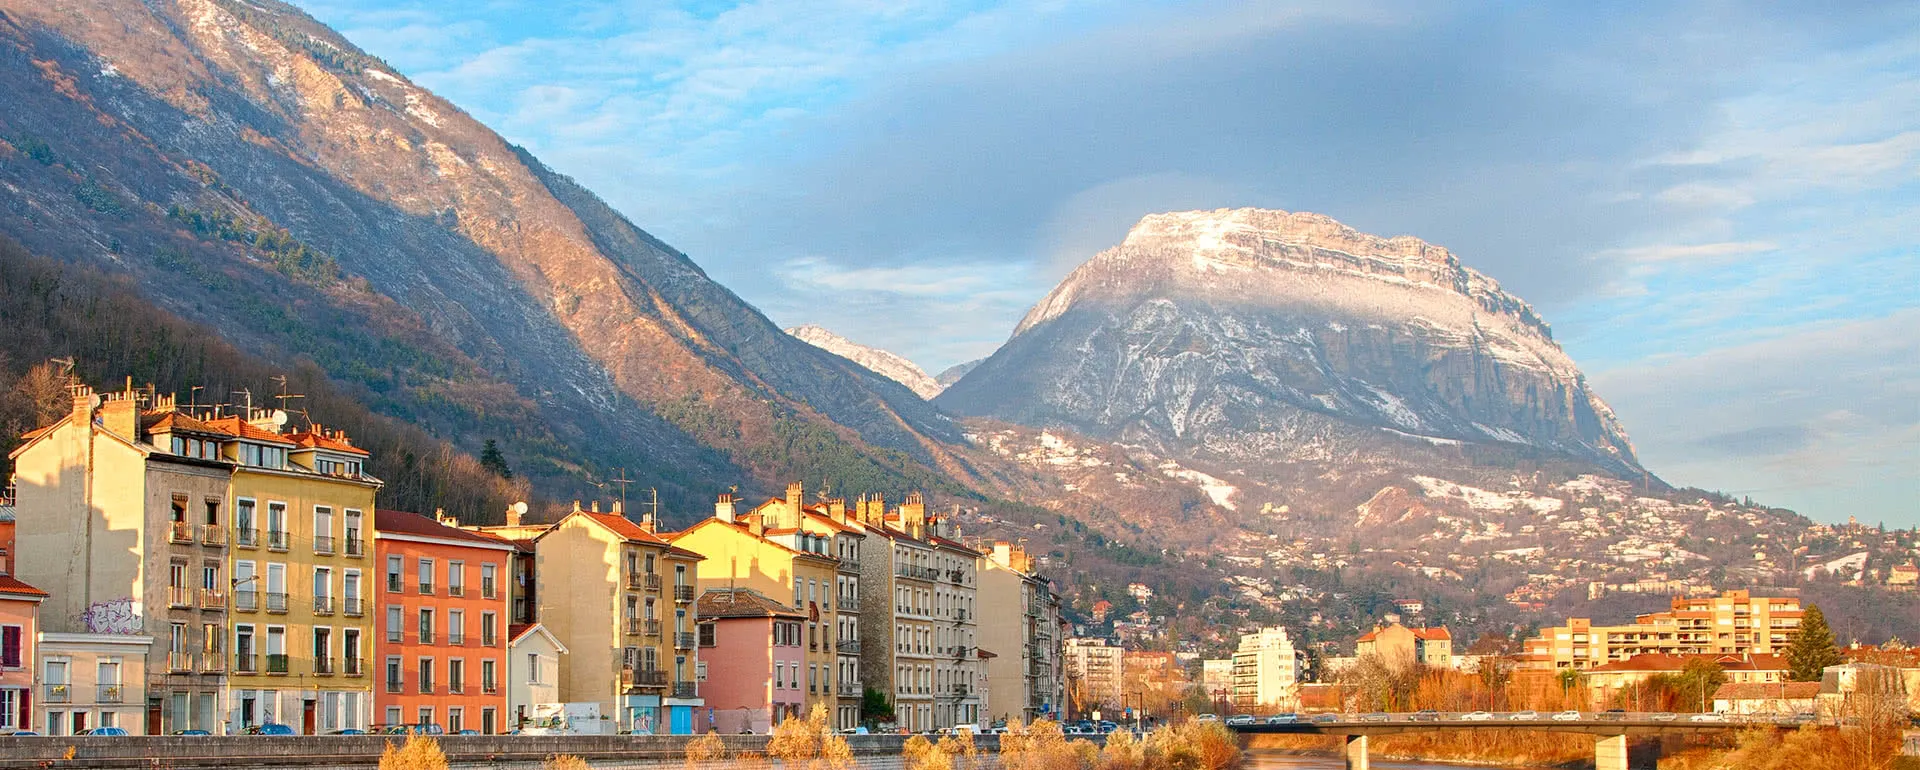 Grenoble - das Reiseziel mit Jugendherbergen